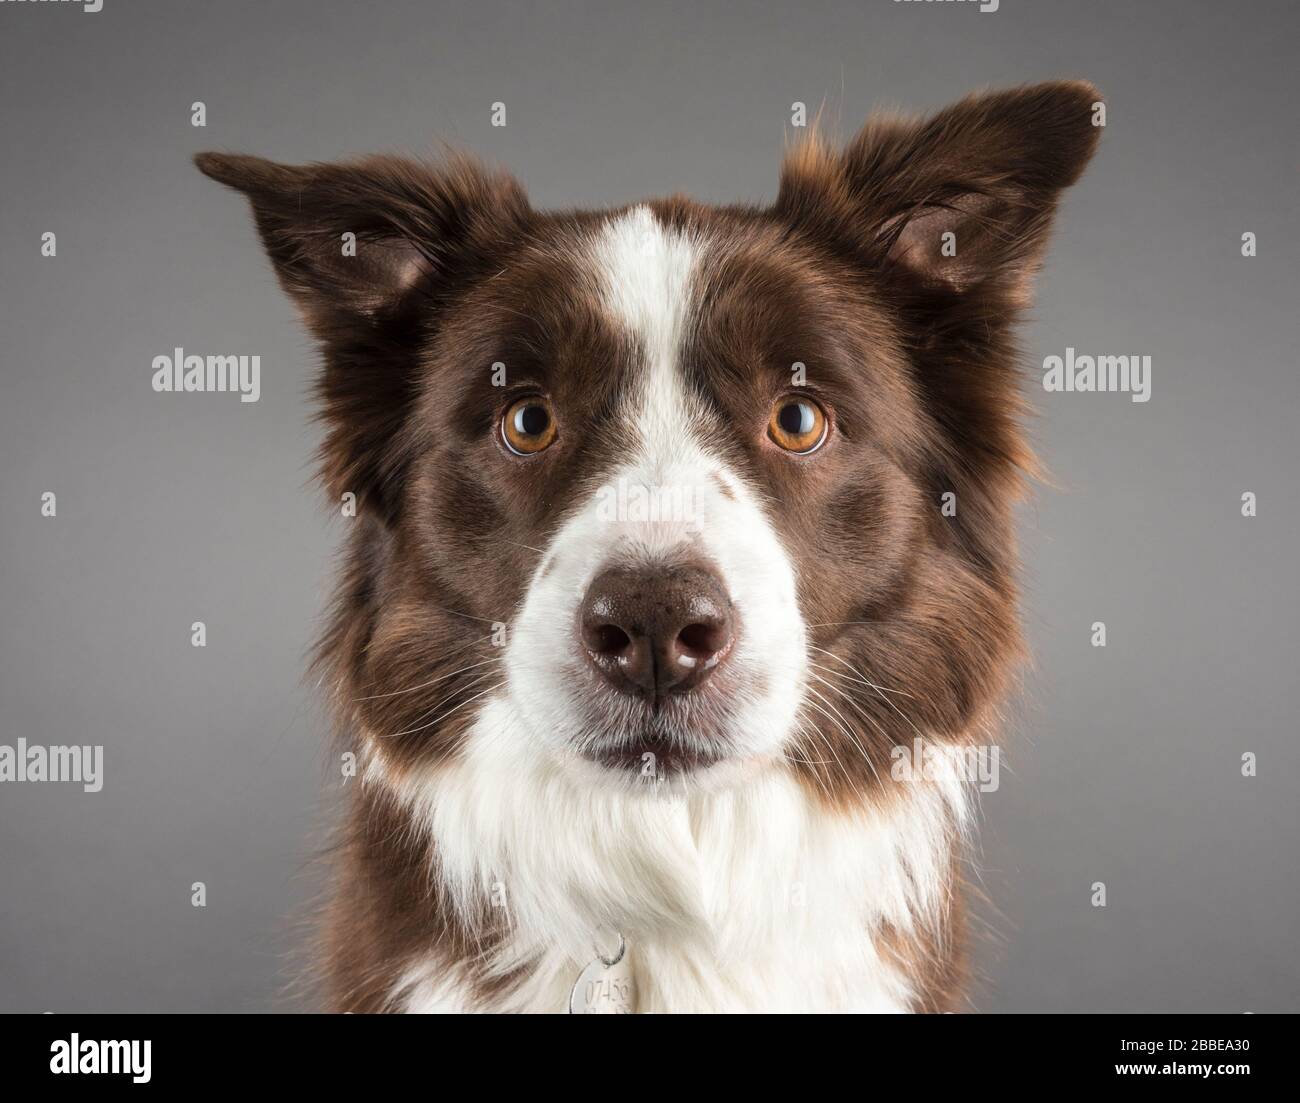 Retrato de un perro Foto de stock